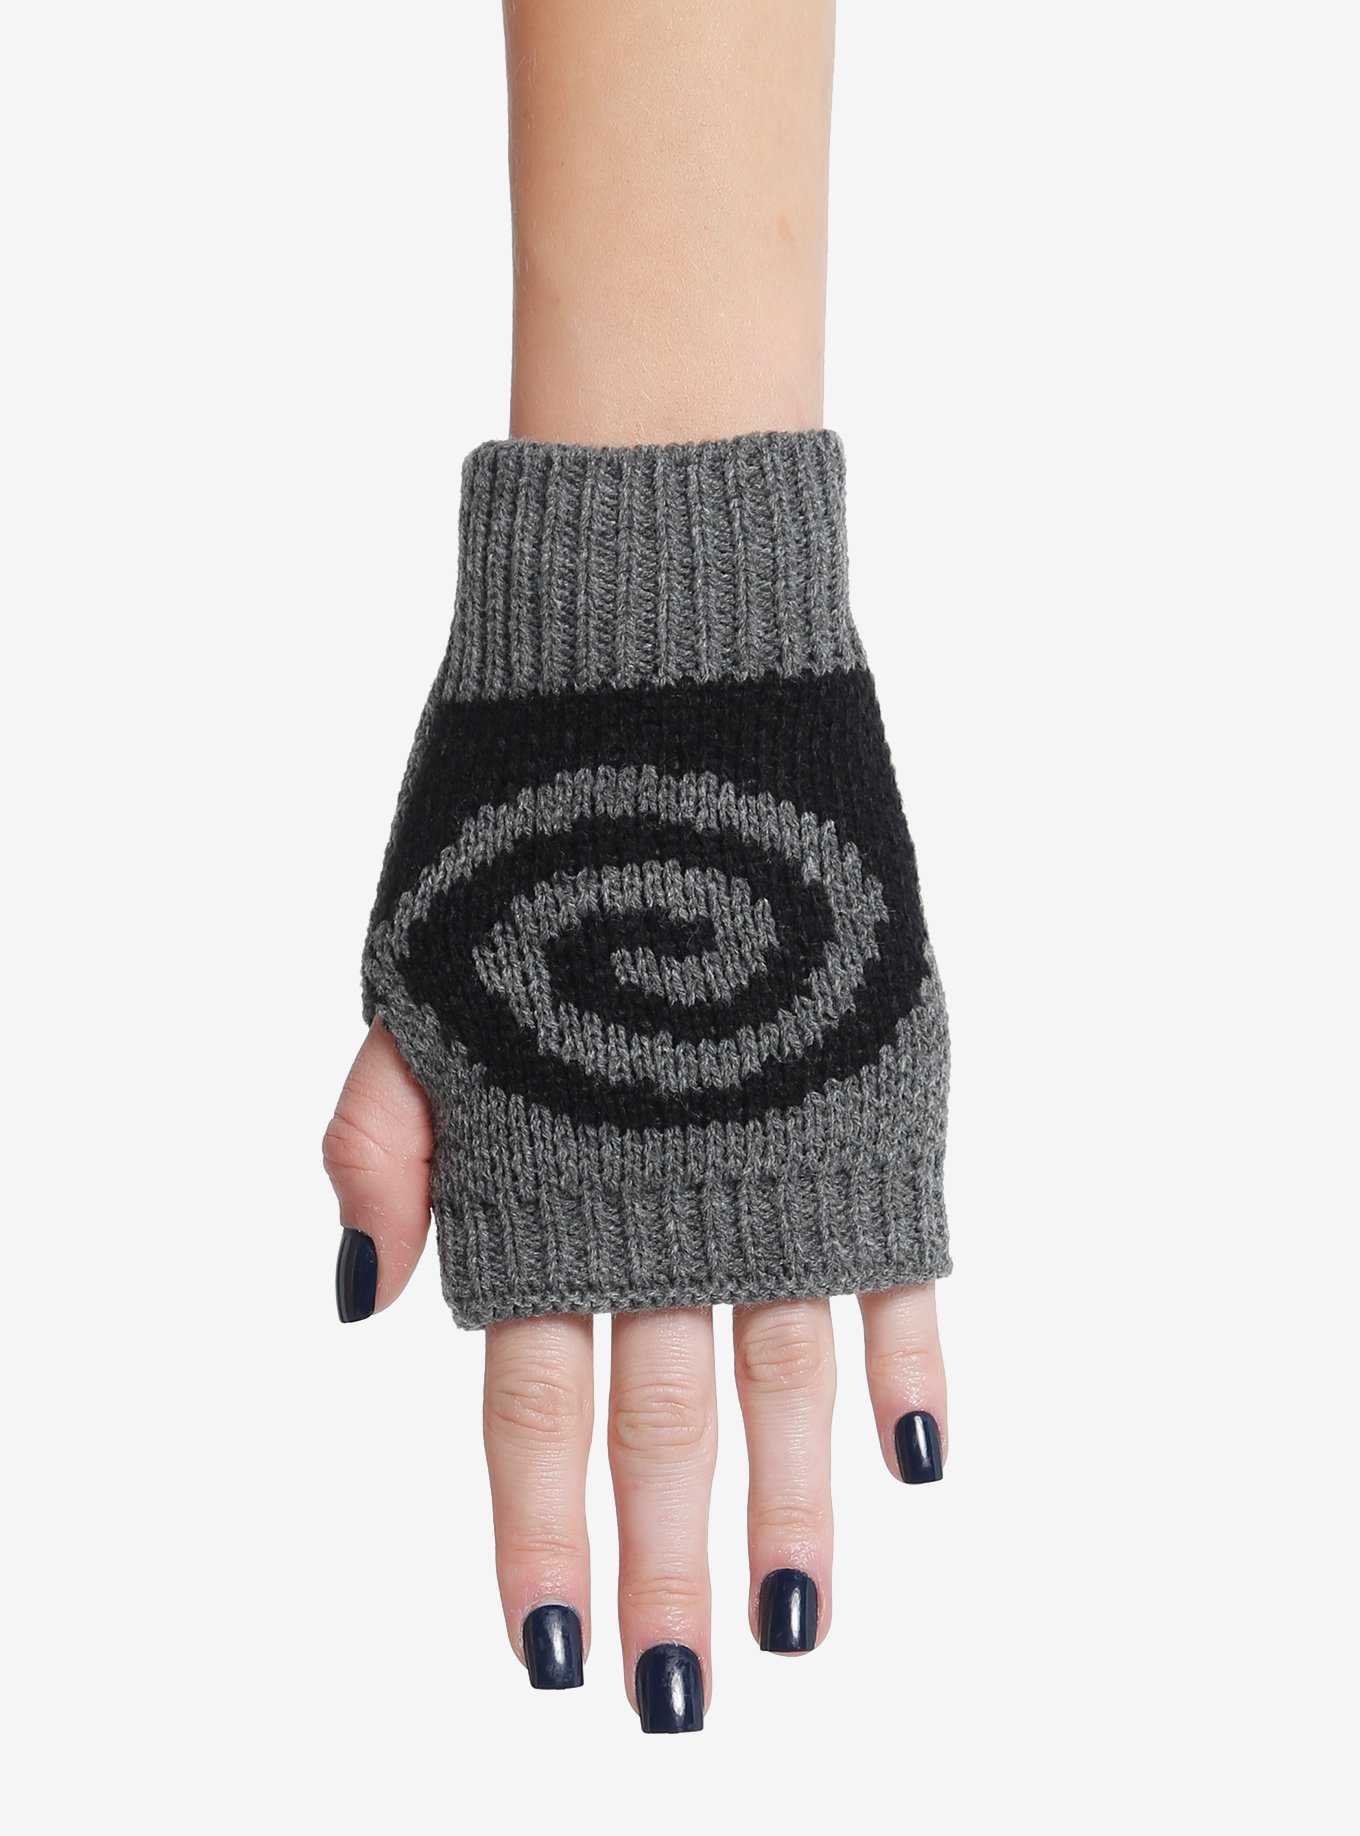 Swirl Knit Fingerless Gloves, , hi-res